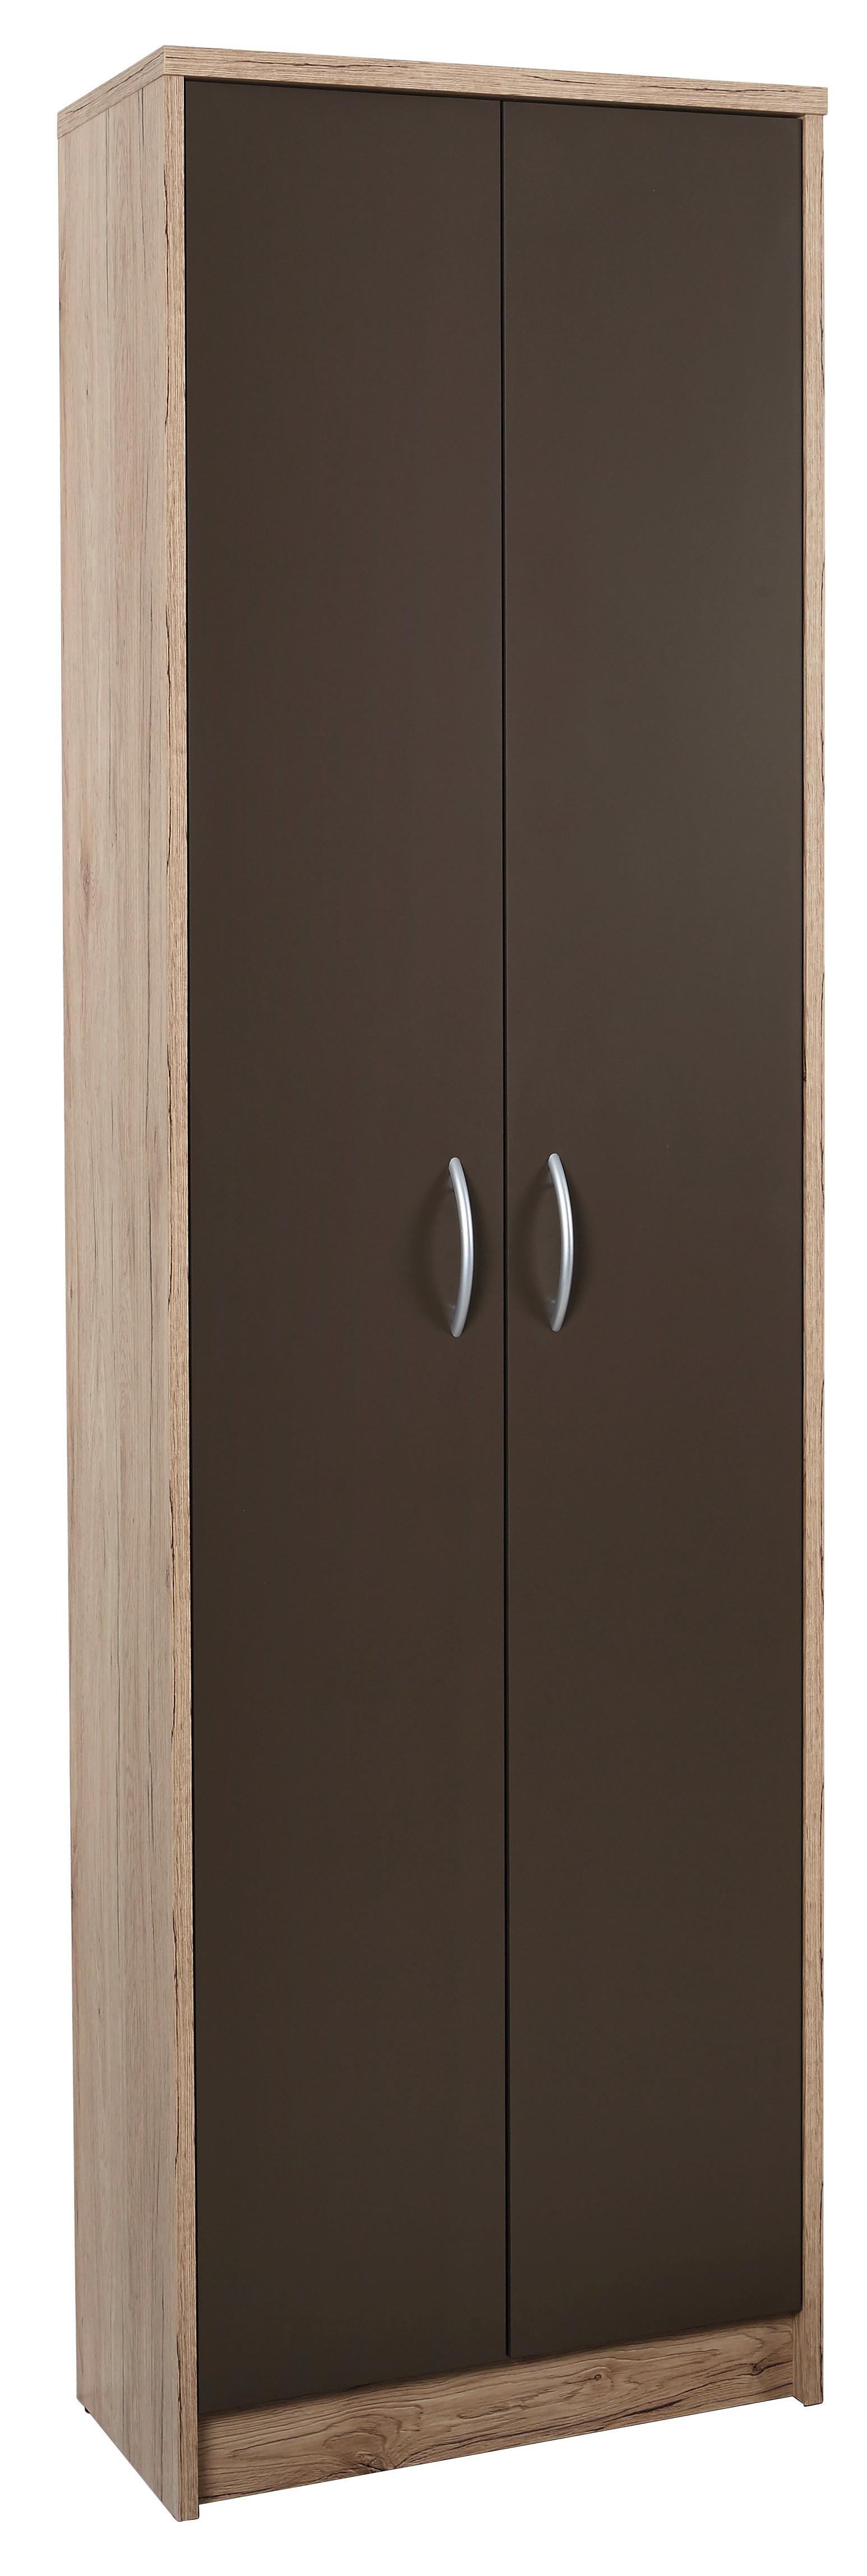 Dulap de haine Iza - maro/culoare lemn stejar, Konventionell, material pe bază de lemn (55/190/26cm)